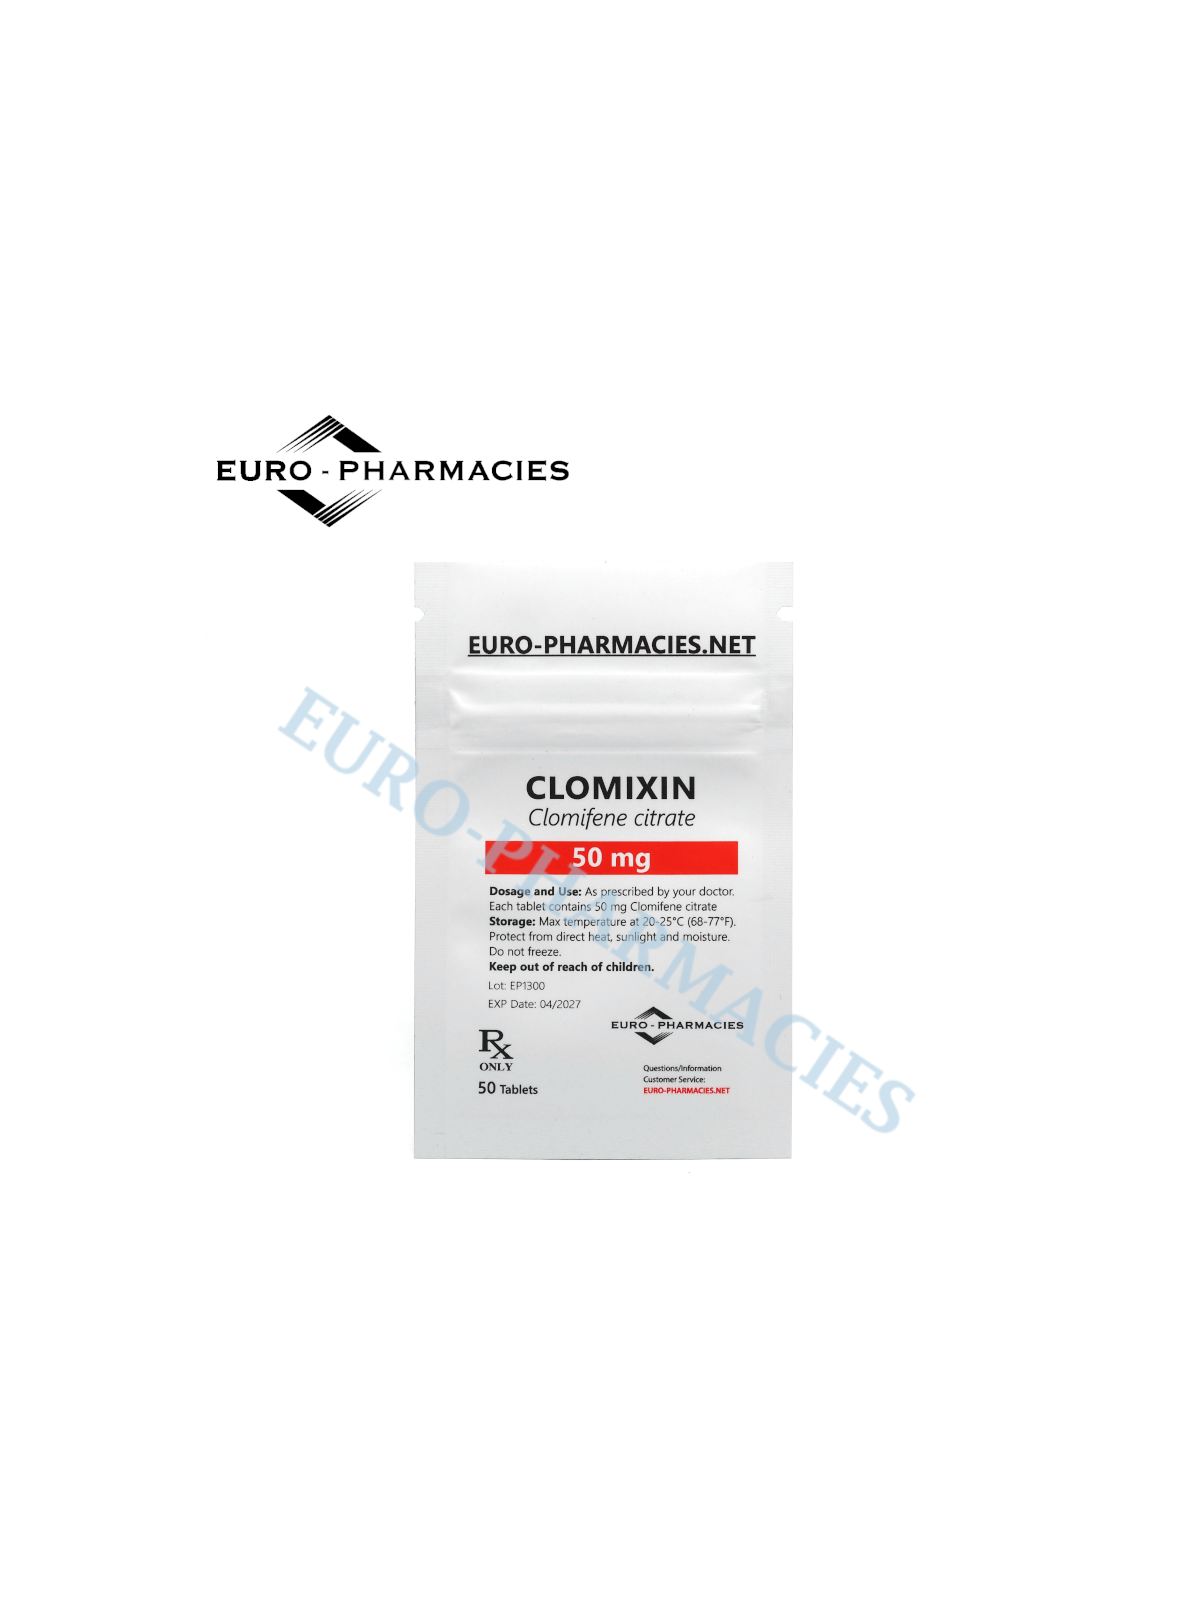 Clomixin (Clomid ) - 50mg/tab, 50 pills/bag - Euro-Pharmacies